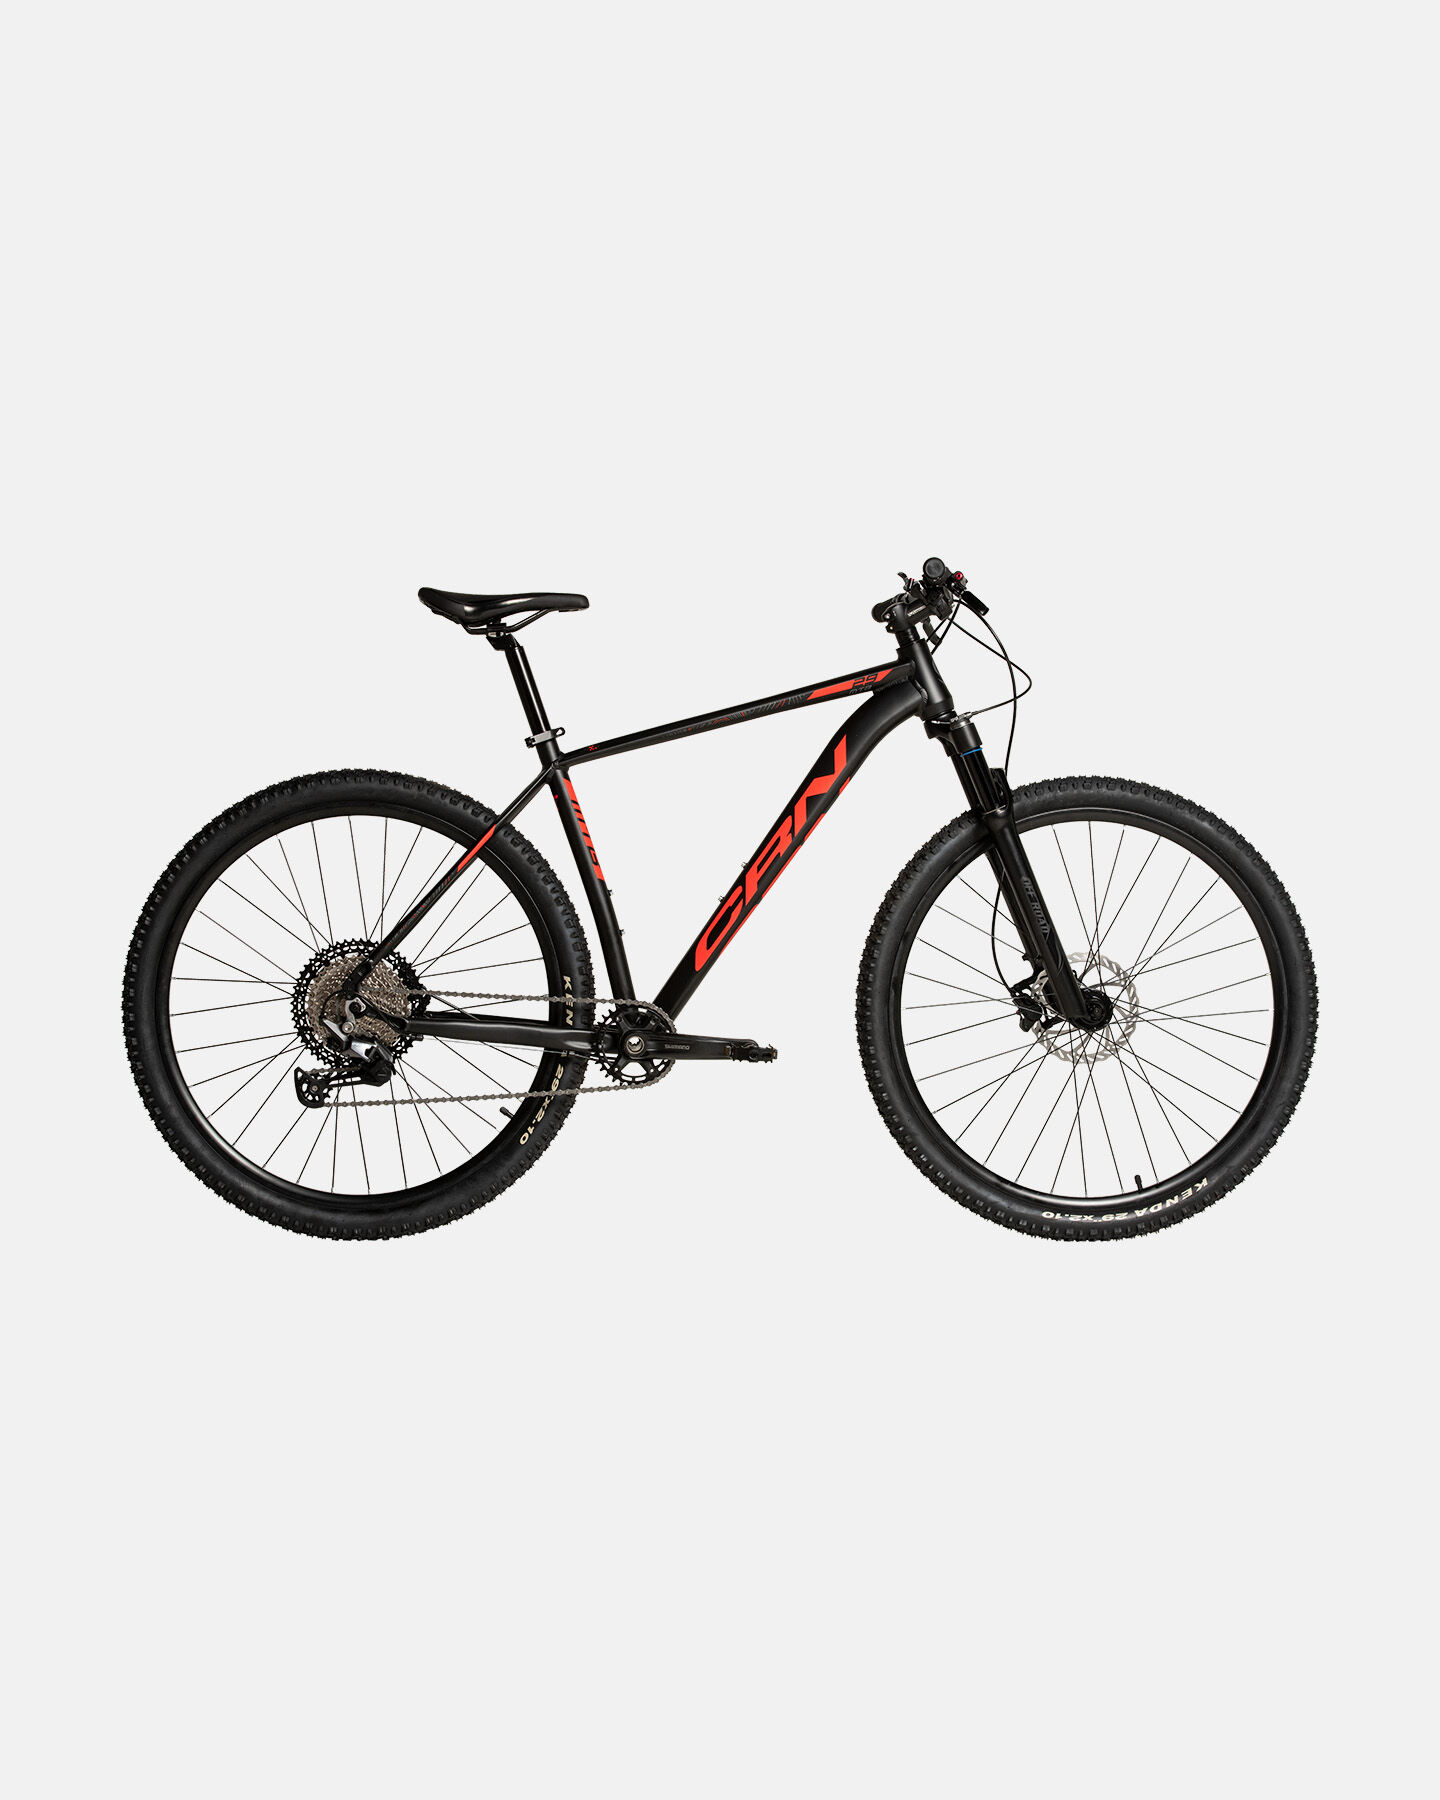  Mountain bike CARNIELLI CRN 6000  S4113178|1|17 scatto 0